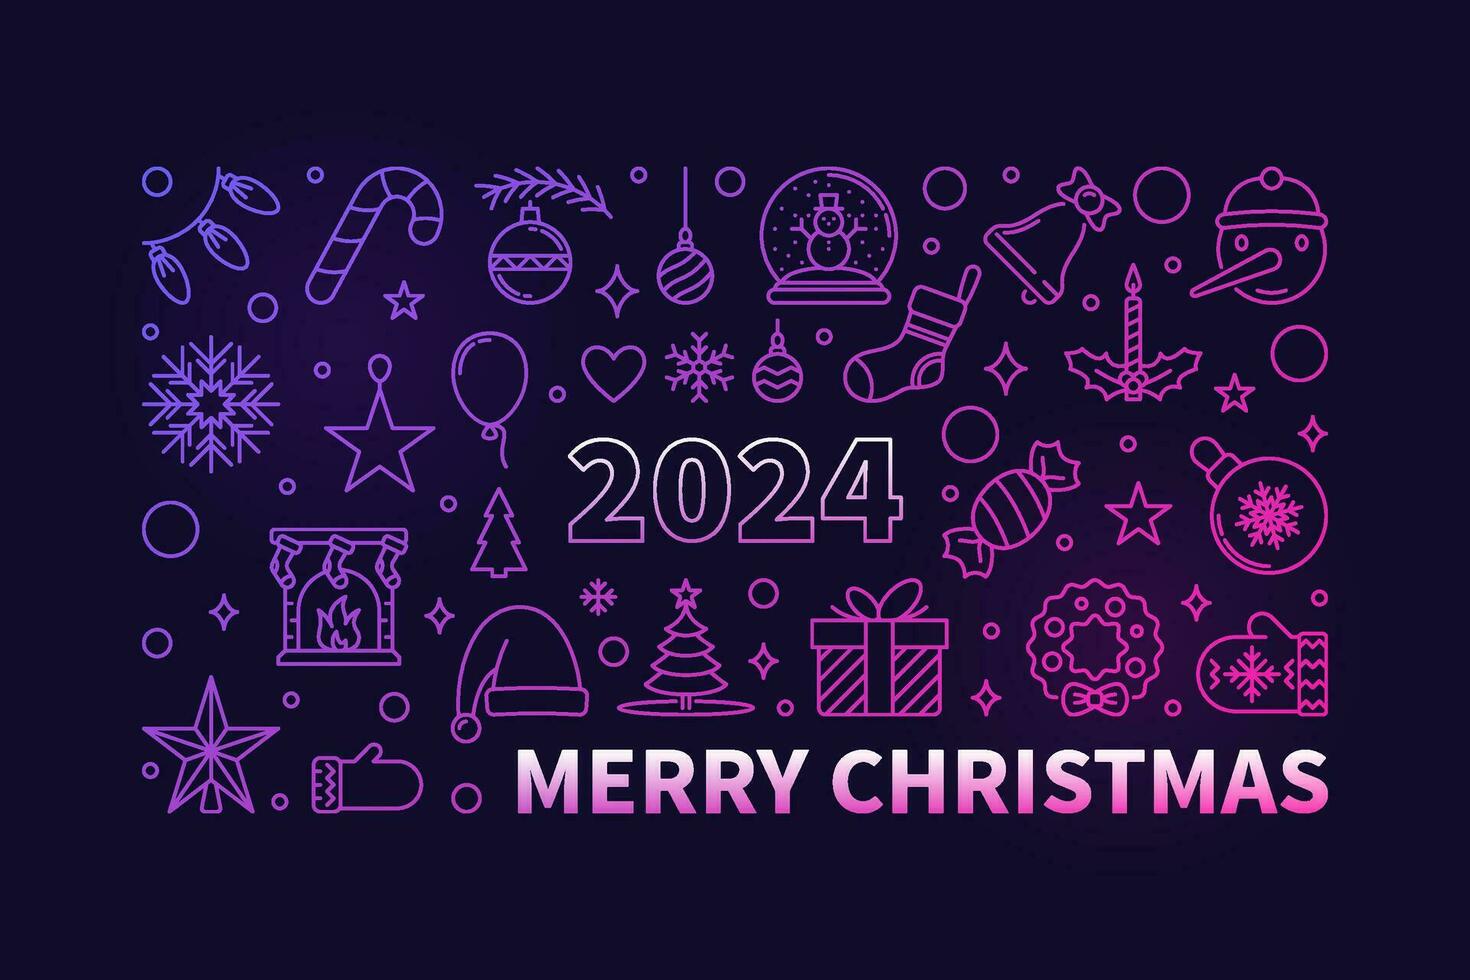 fröhlich Weihnachten farbig Gliederung Banner - - Vektor 2024 Weihnachten horizontal Illustration